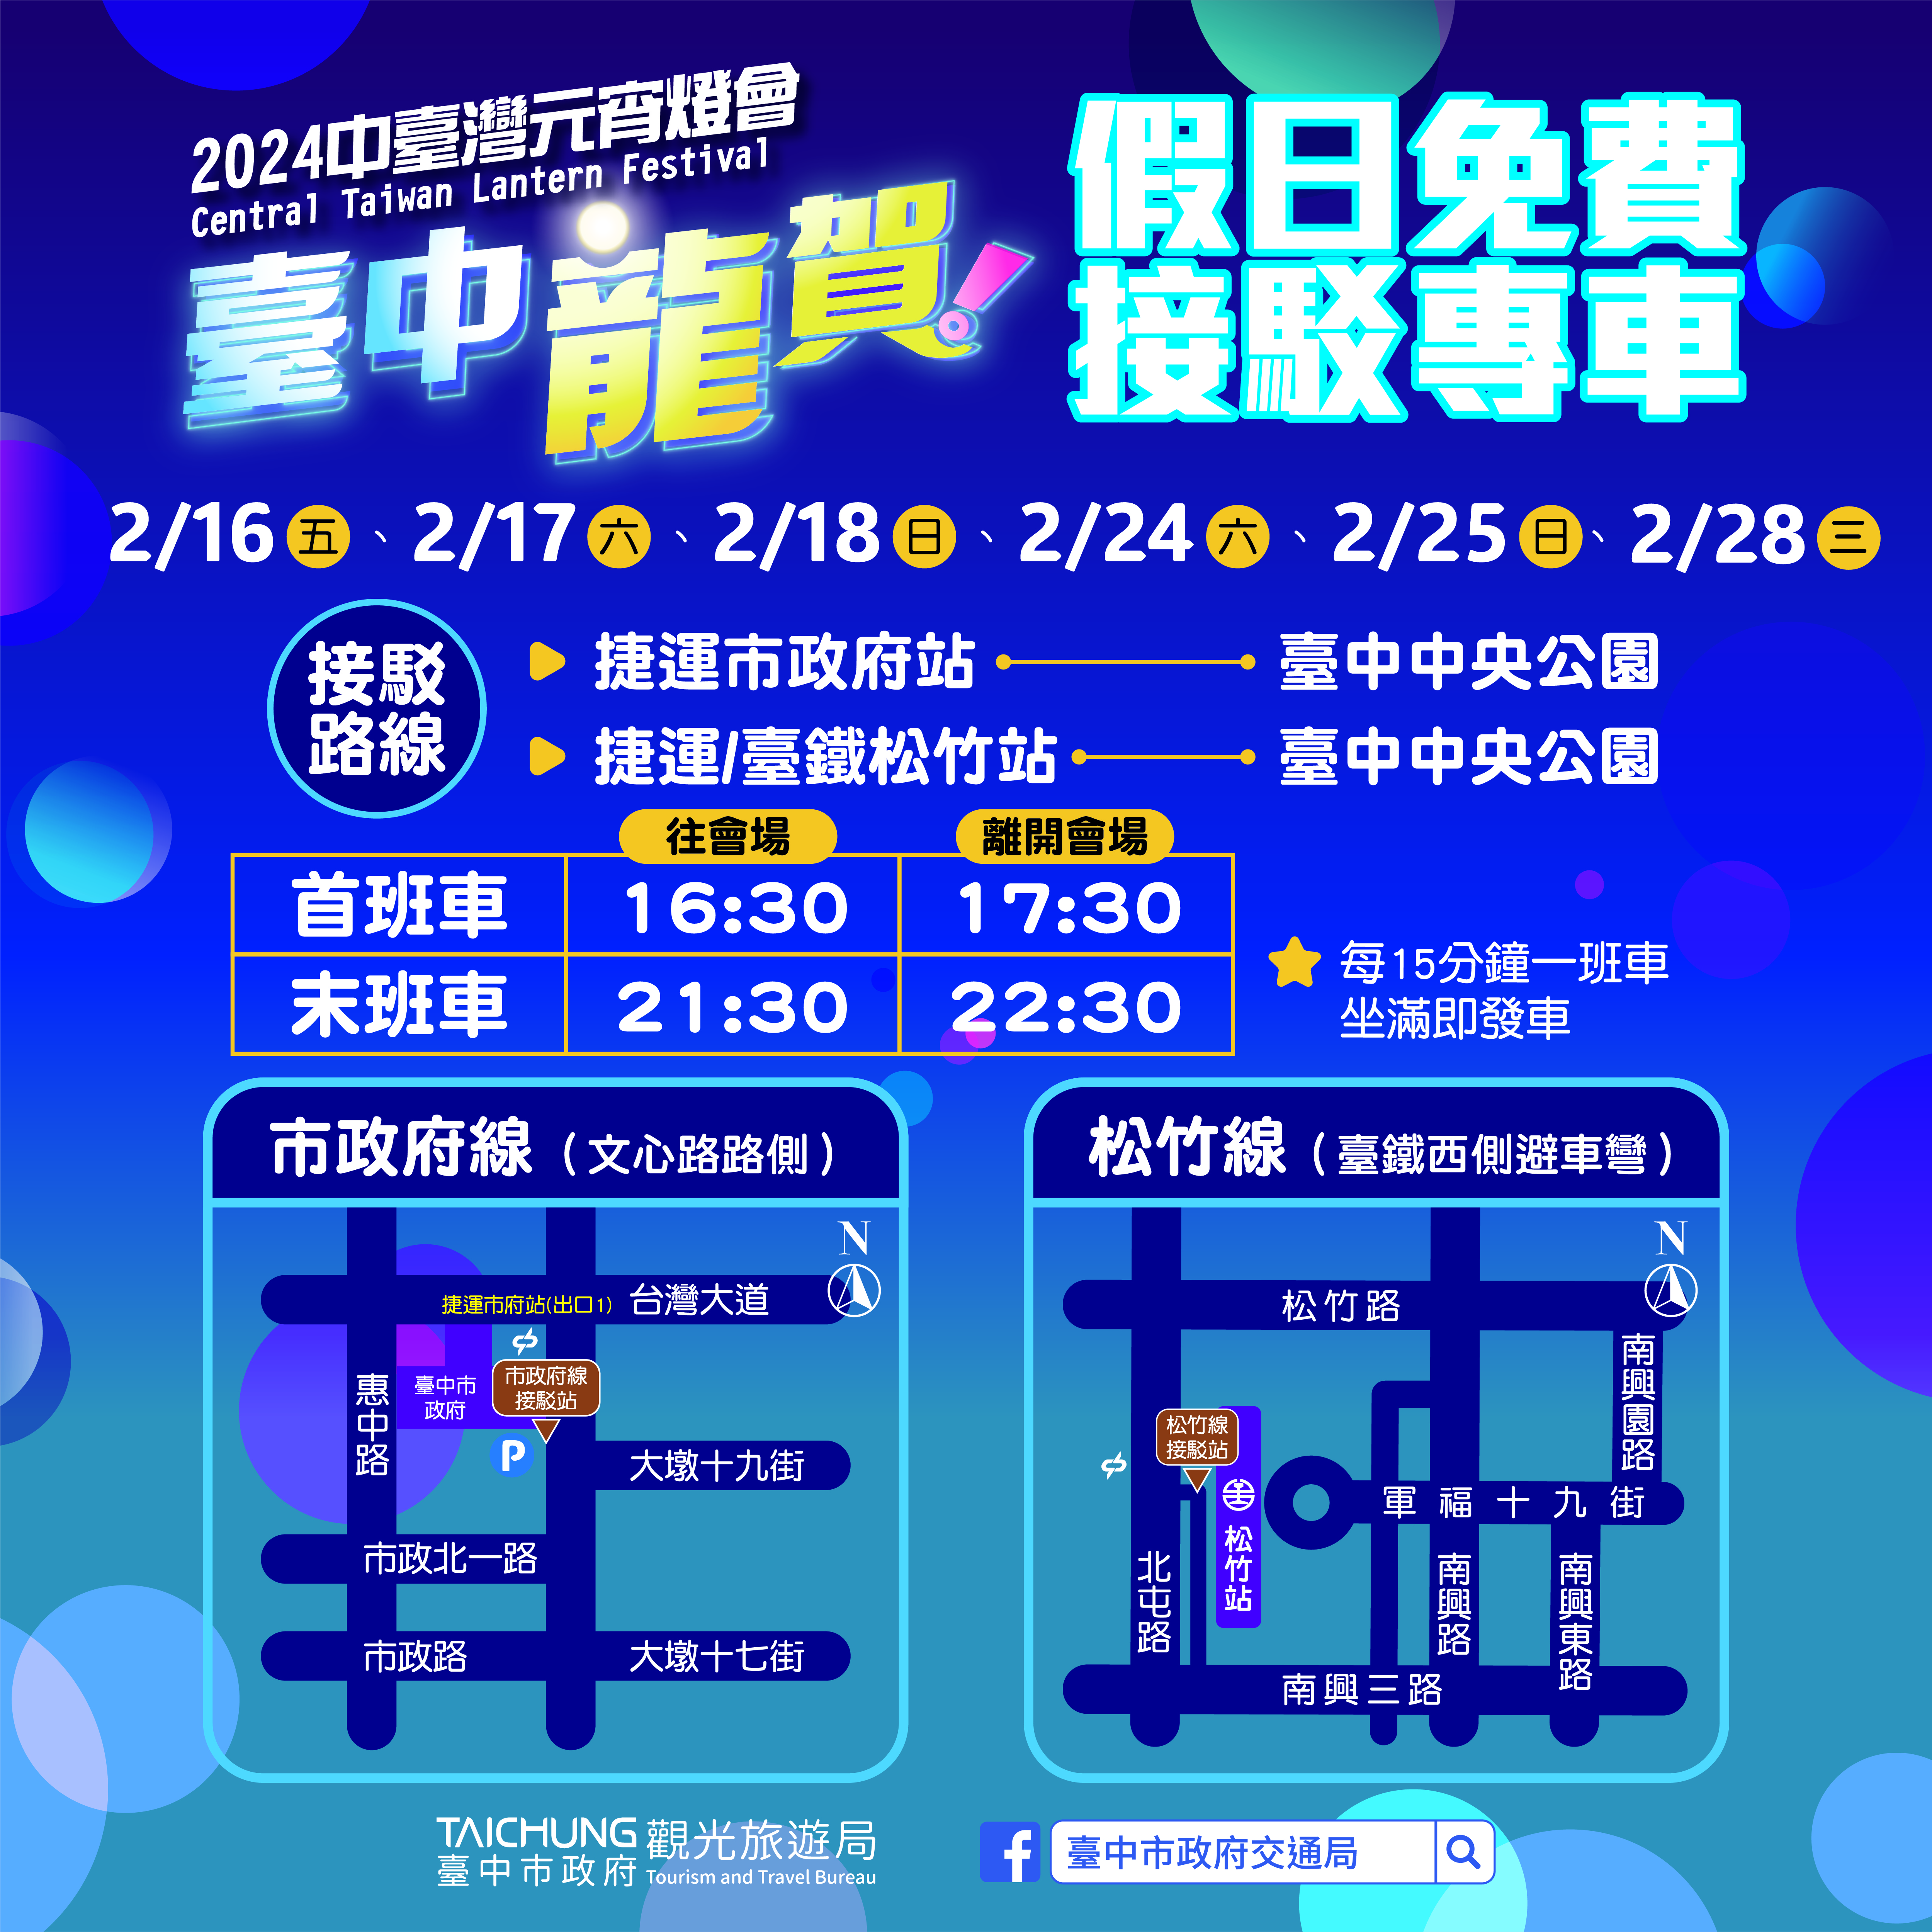 中台灣元宵燈會延長3天  228假日接駁車同步提供服務